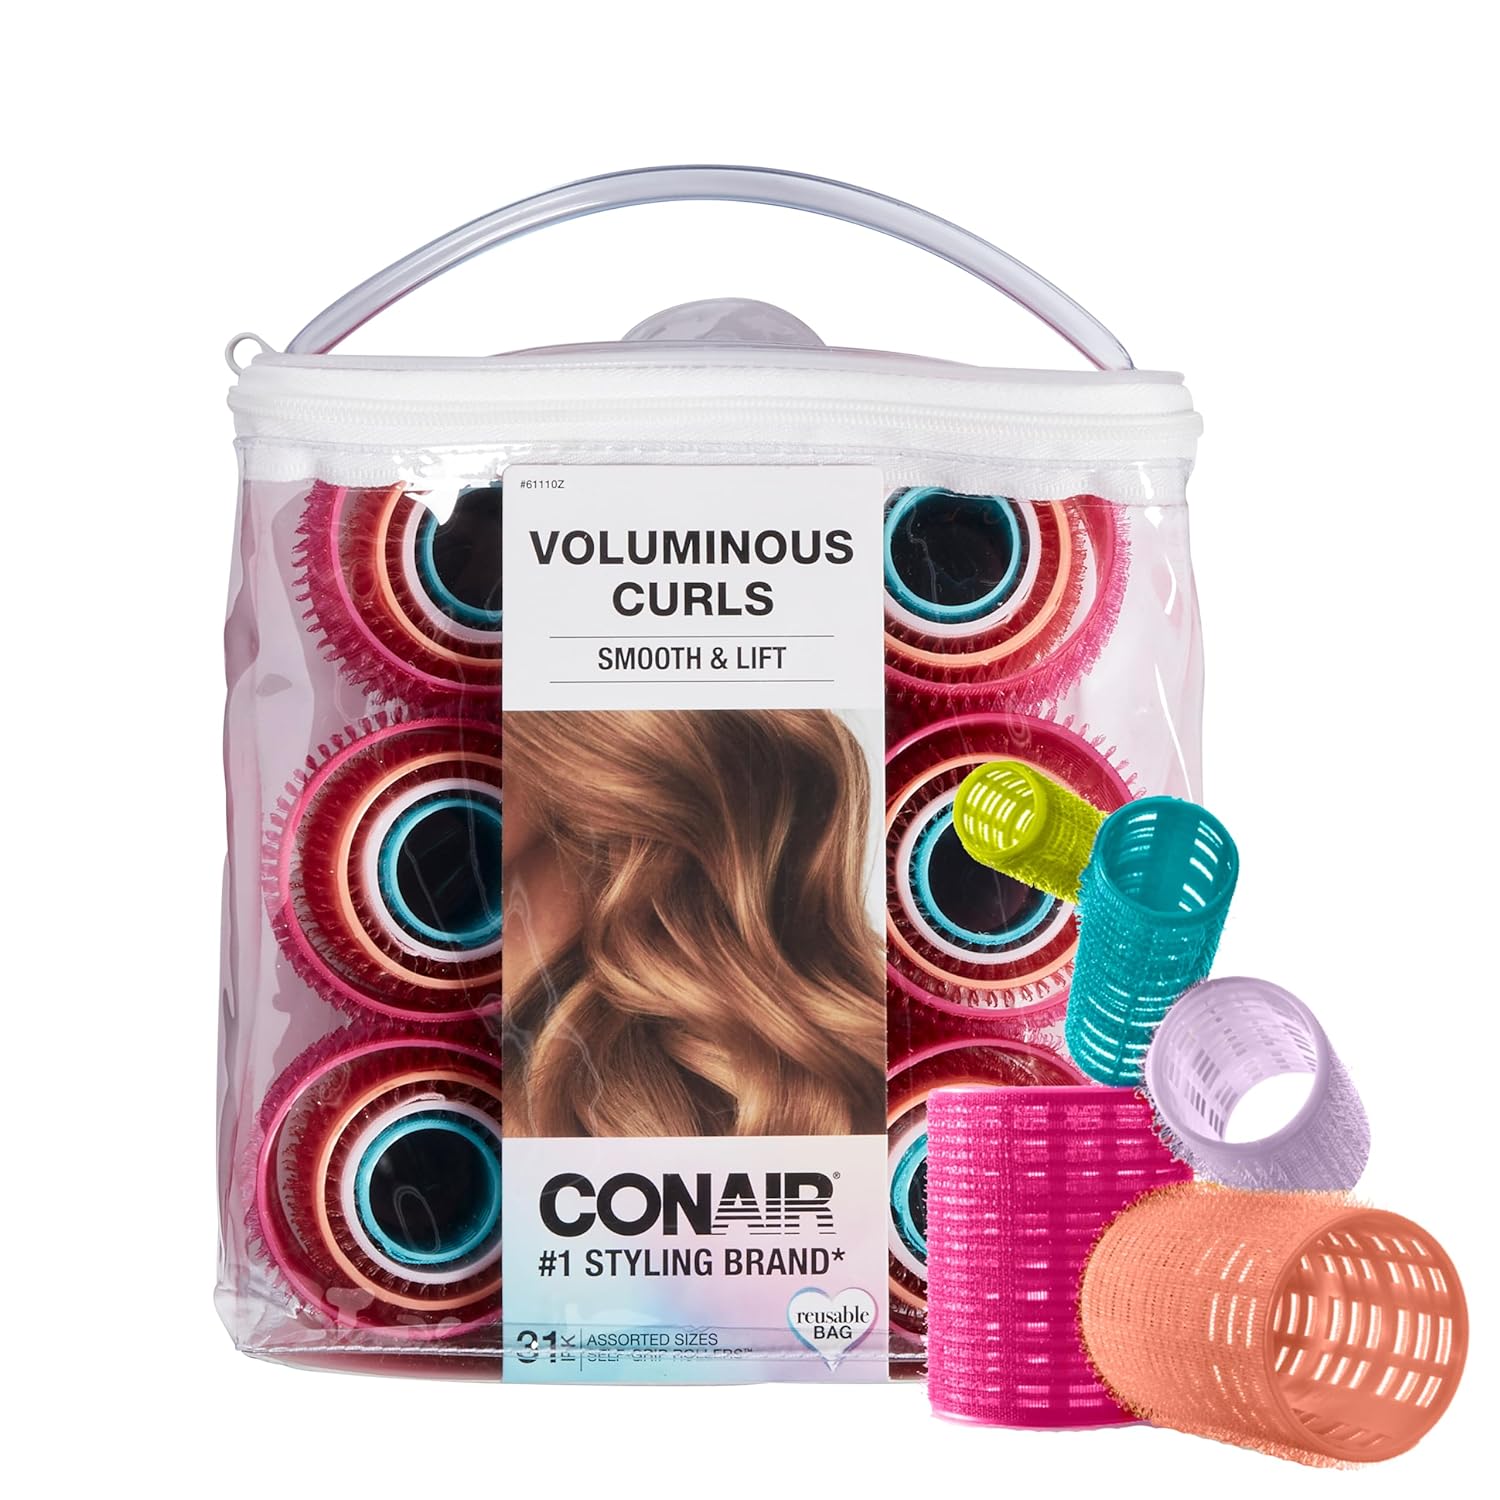 Best Hair Curler: Top 5 Hair Curling Tools for Effortless Curls